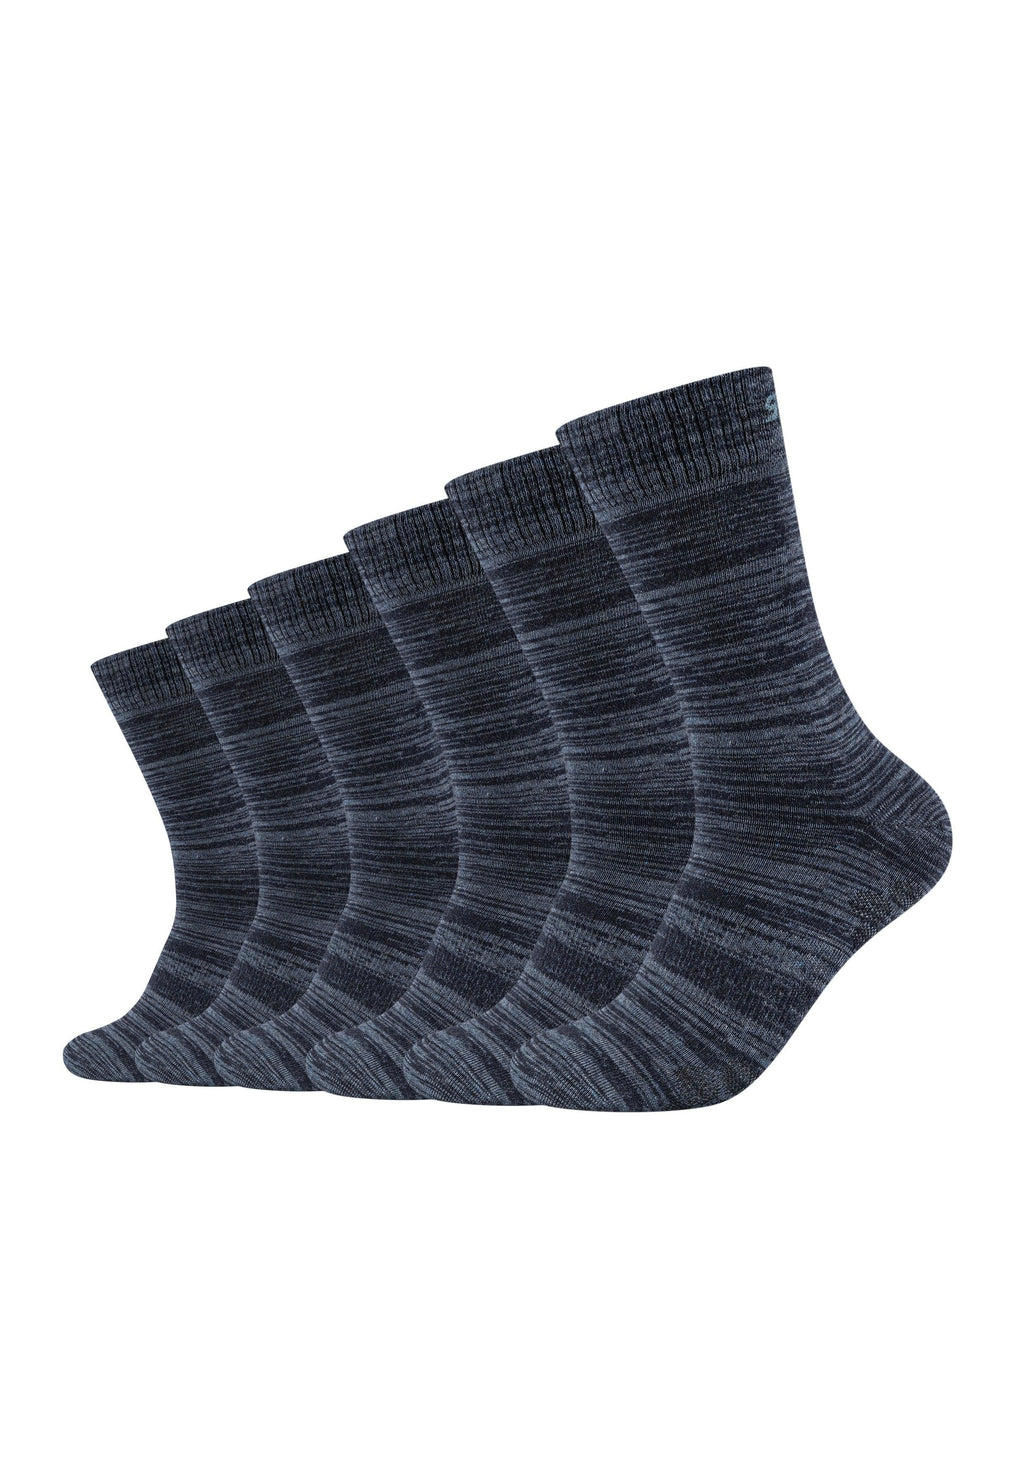 Socken Mesh Ventilation 6er Pack ONSKINERY –